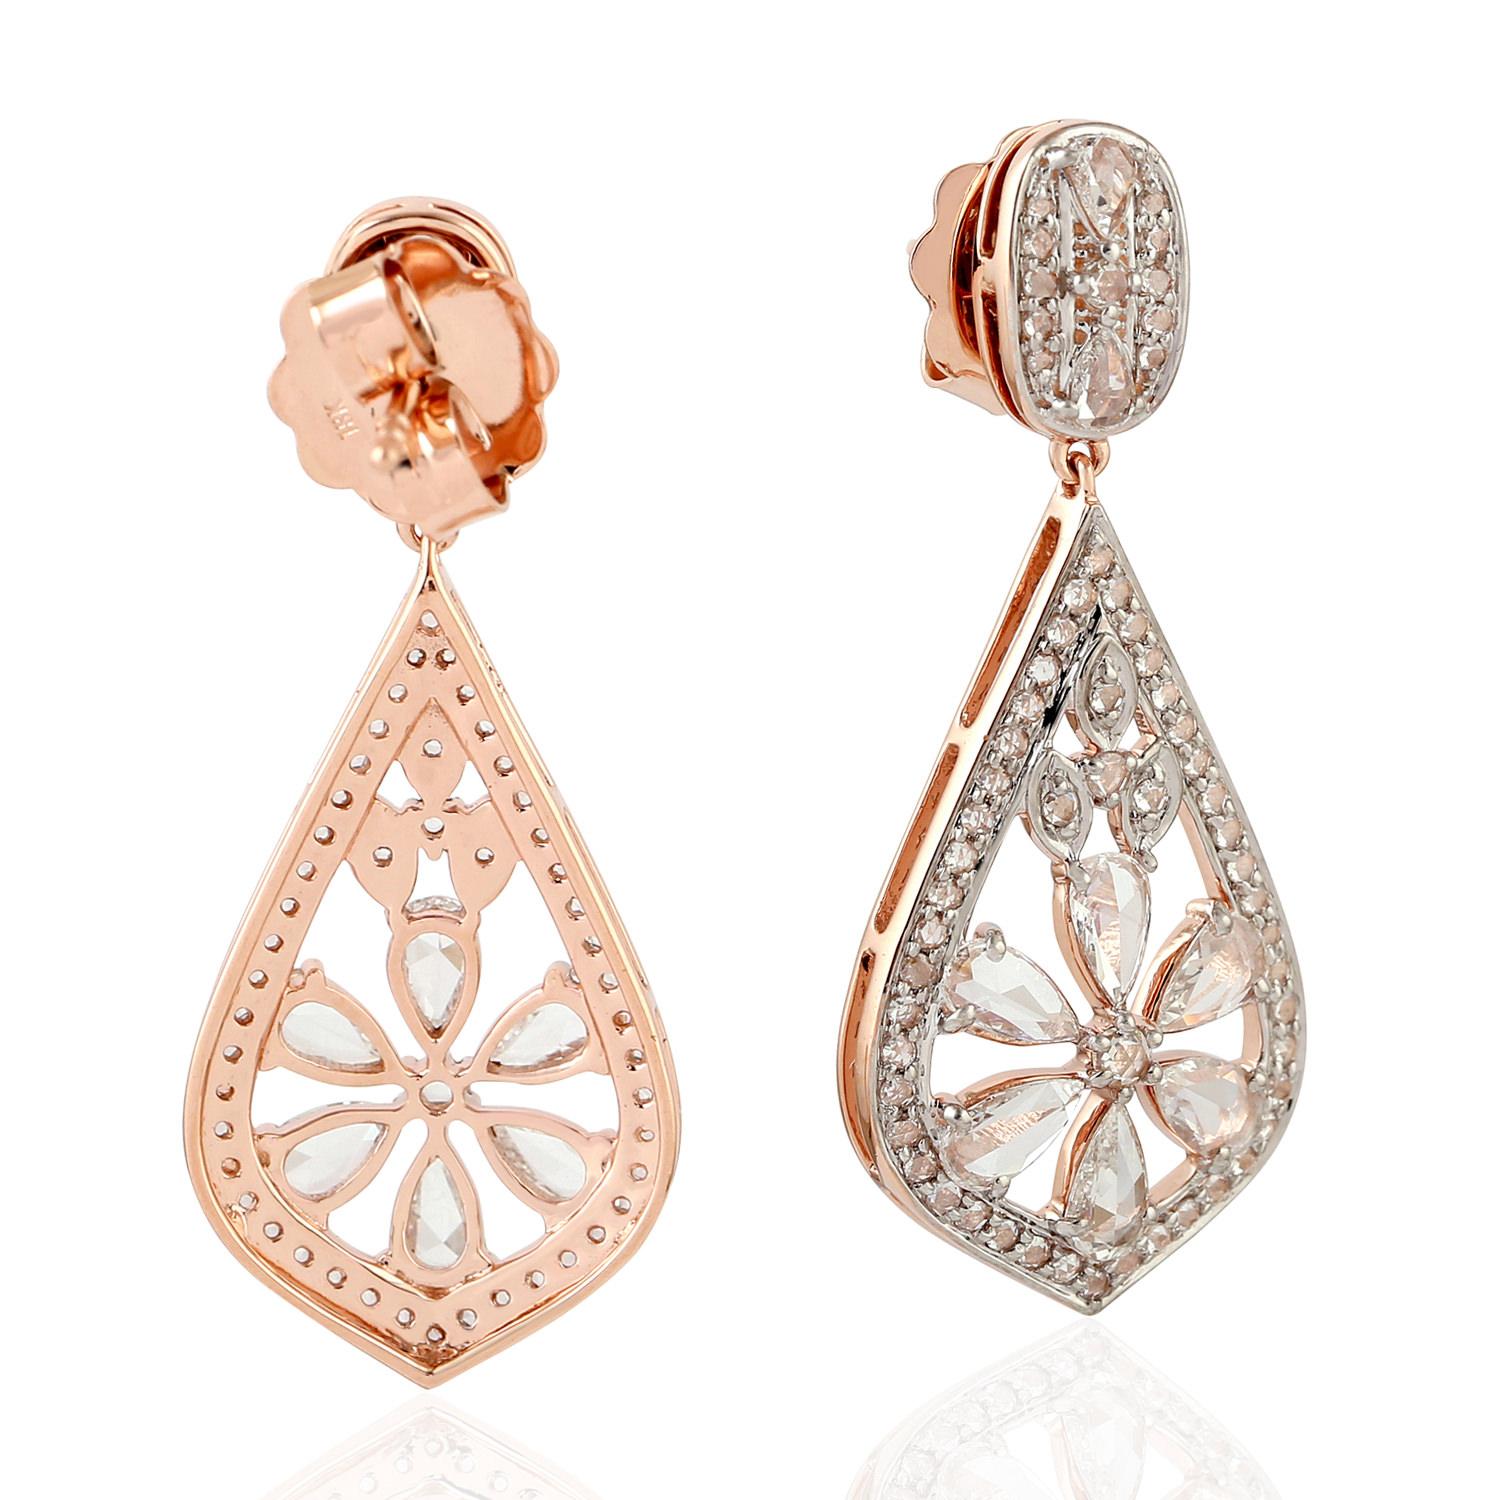 Ces magnifiques boucles d'oreilles sont fabriquées à la main en or 18 carats et serties de 2,07 carats de diamants taille rose. 

SUIVRE  La vitrine de MEGHNA JEWELS pour découvrir la dernière collection et les pièces exclusives.  Meghna Jewels se